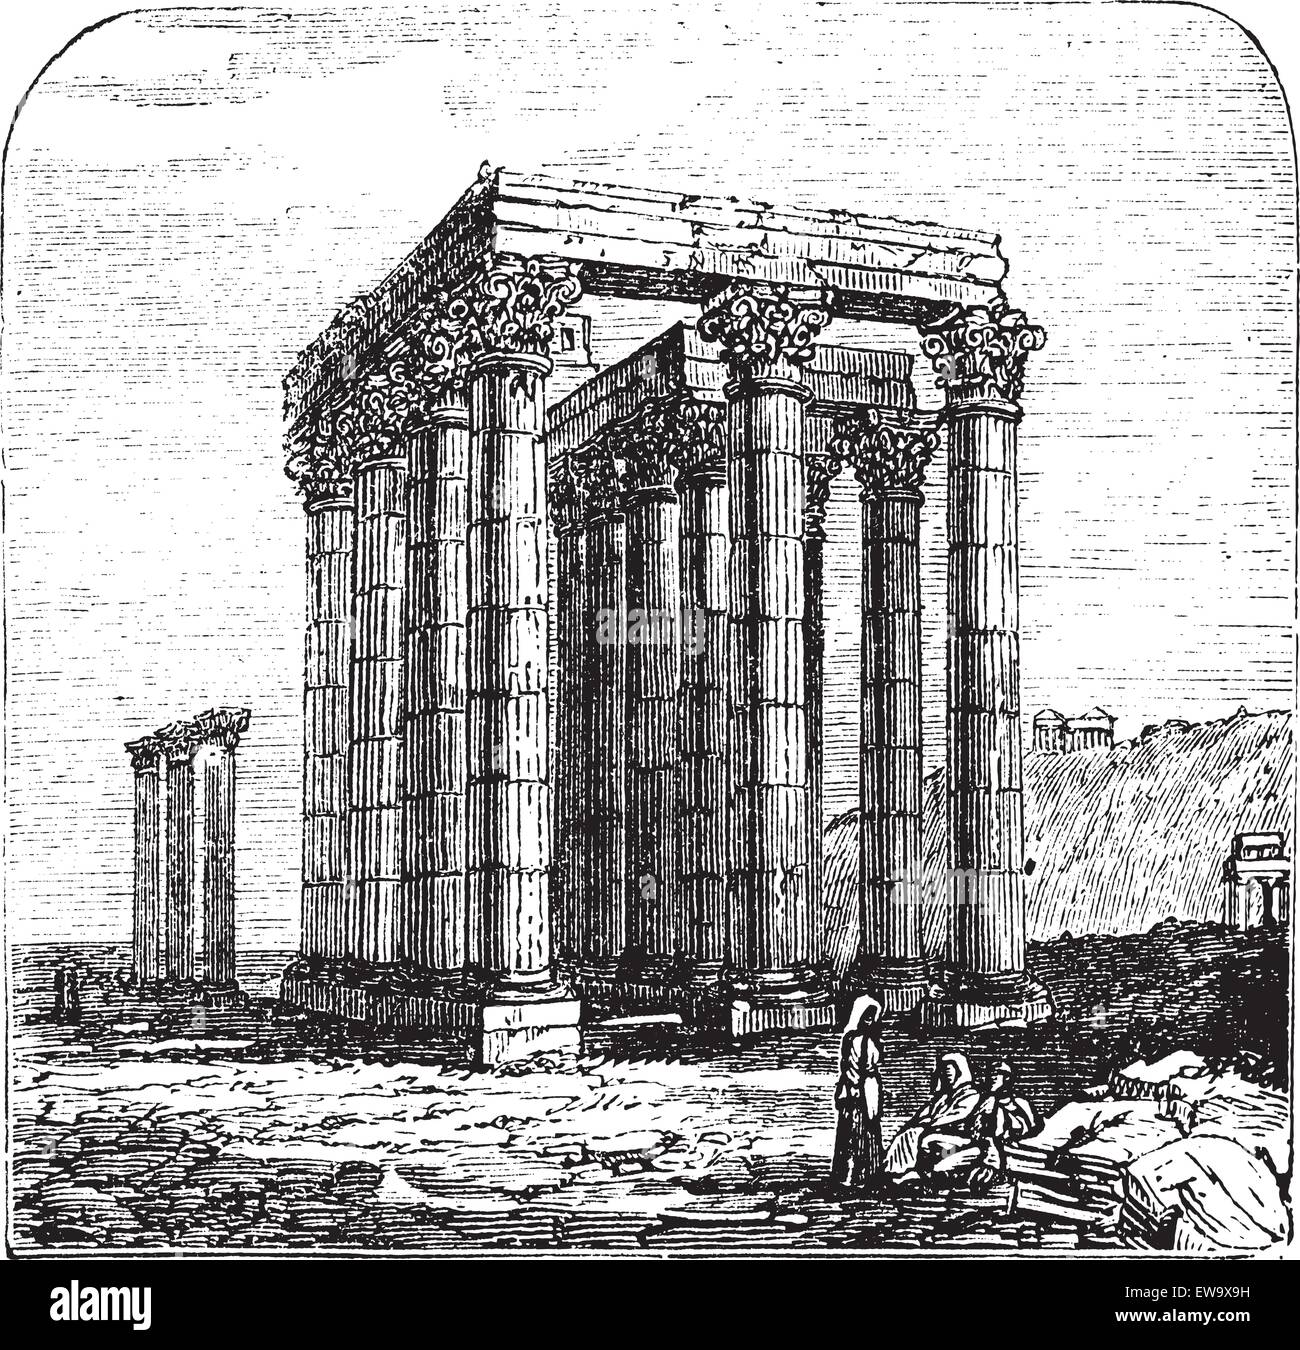 Le Temple de Zeus Olympien, Olympieion ou colonnes de la Zeus Olympien, Grec, Athènes. Gravure d'époque. Illustra gravé ancien Illustration de Vecteur